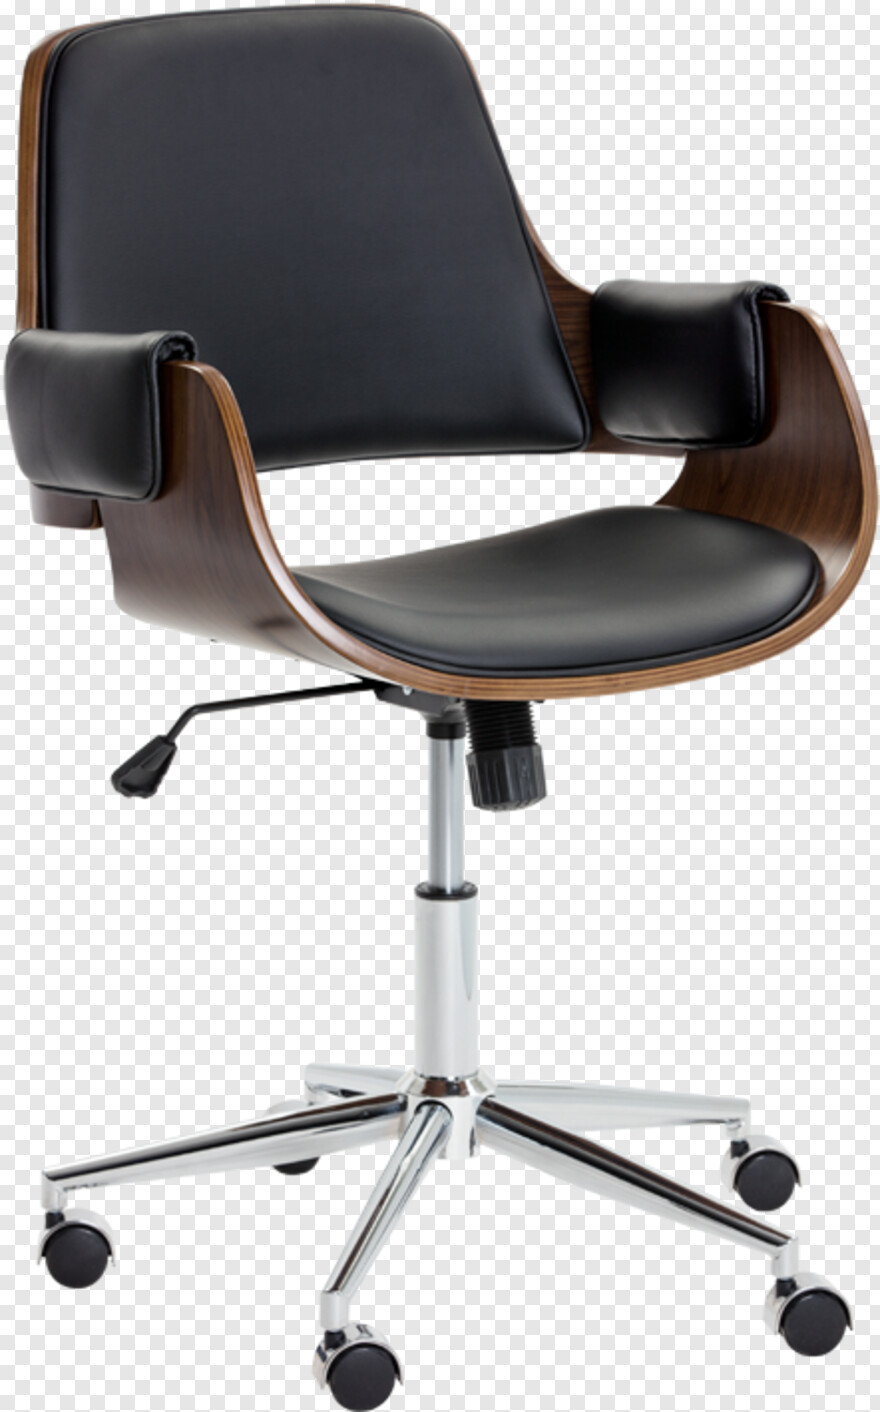 chair # 451996